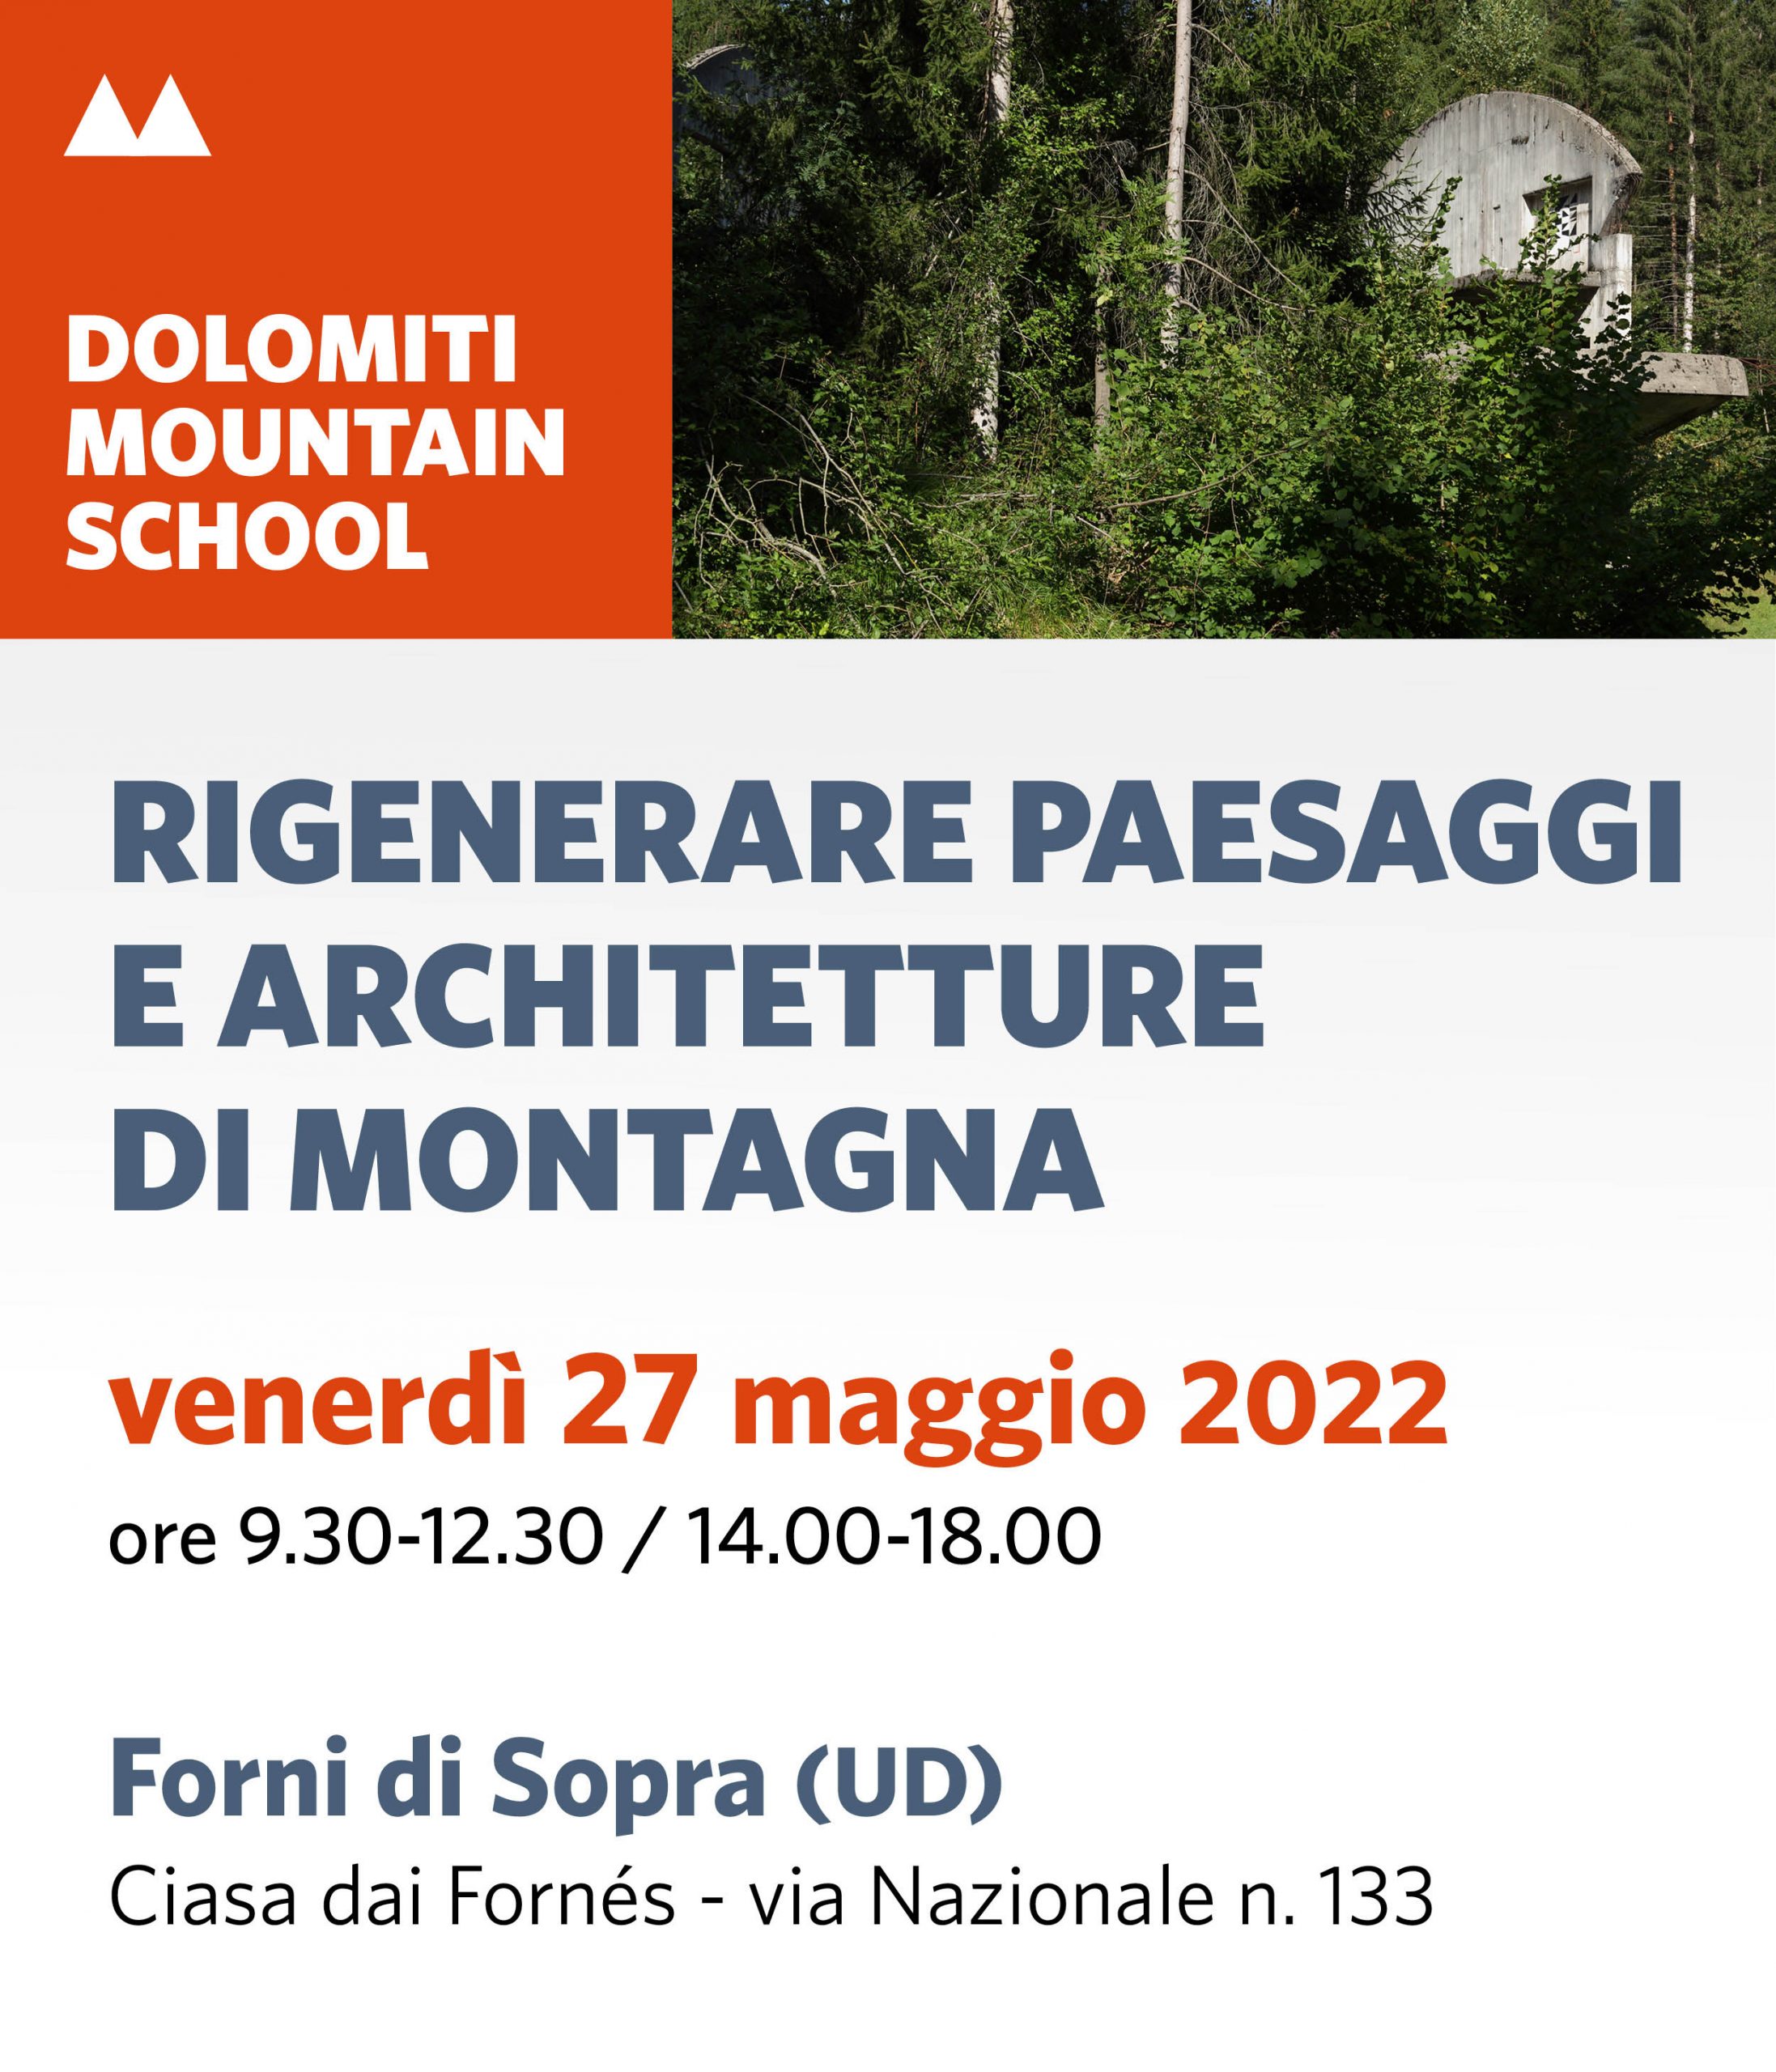 Dolomiti-Mountain-School-27-maggio-post-generale-1-scaled-2.